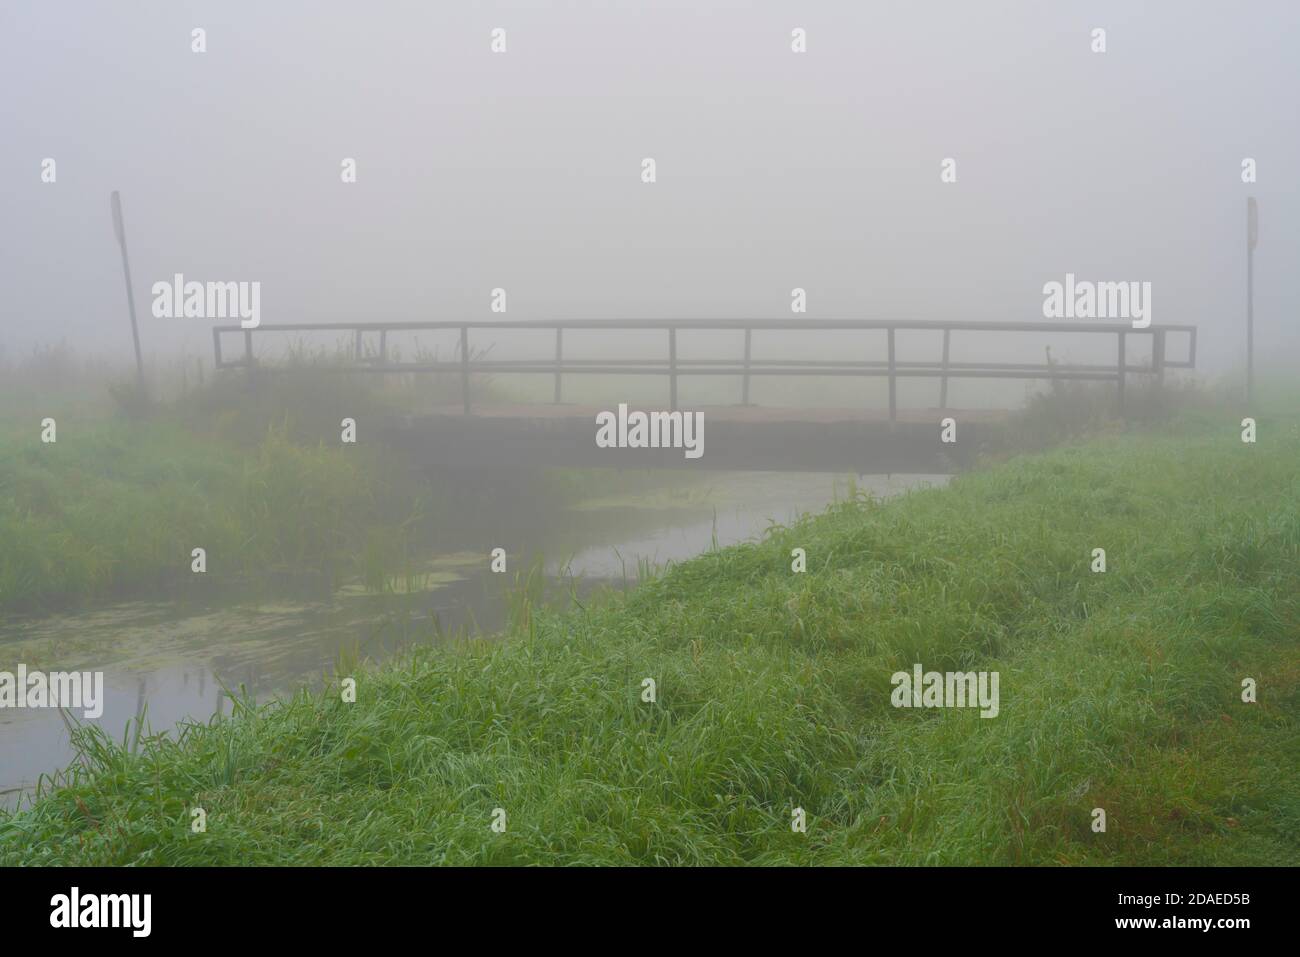 Brouillard sur une petite rivière avec un pont, netteté sélective, netteté au premier plan Banque D'Images